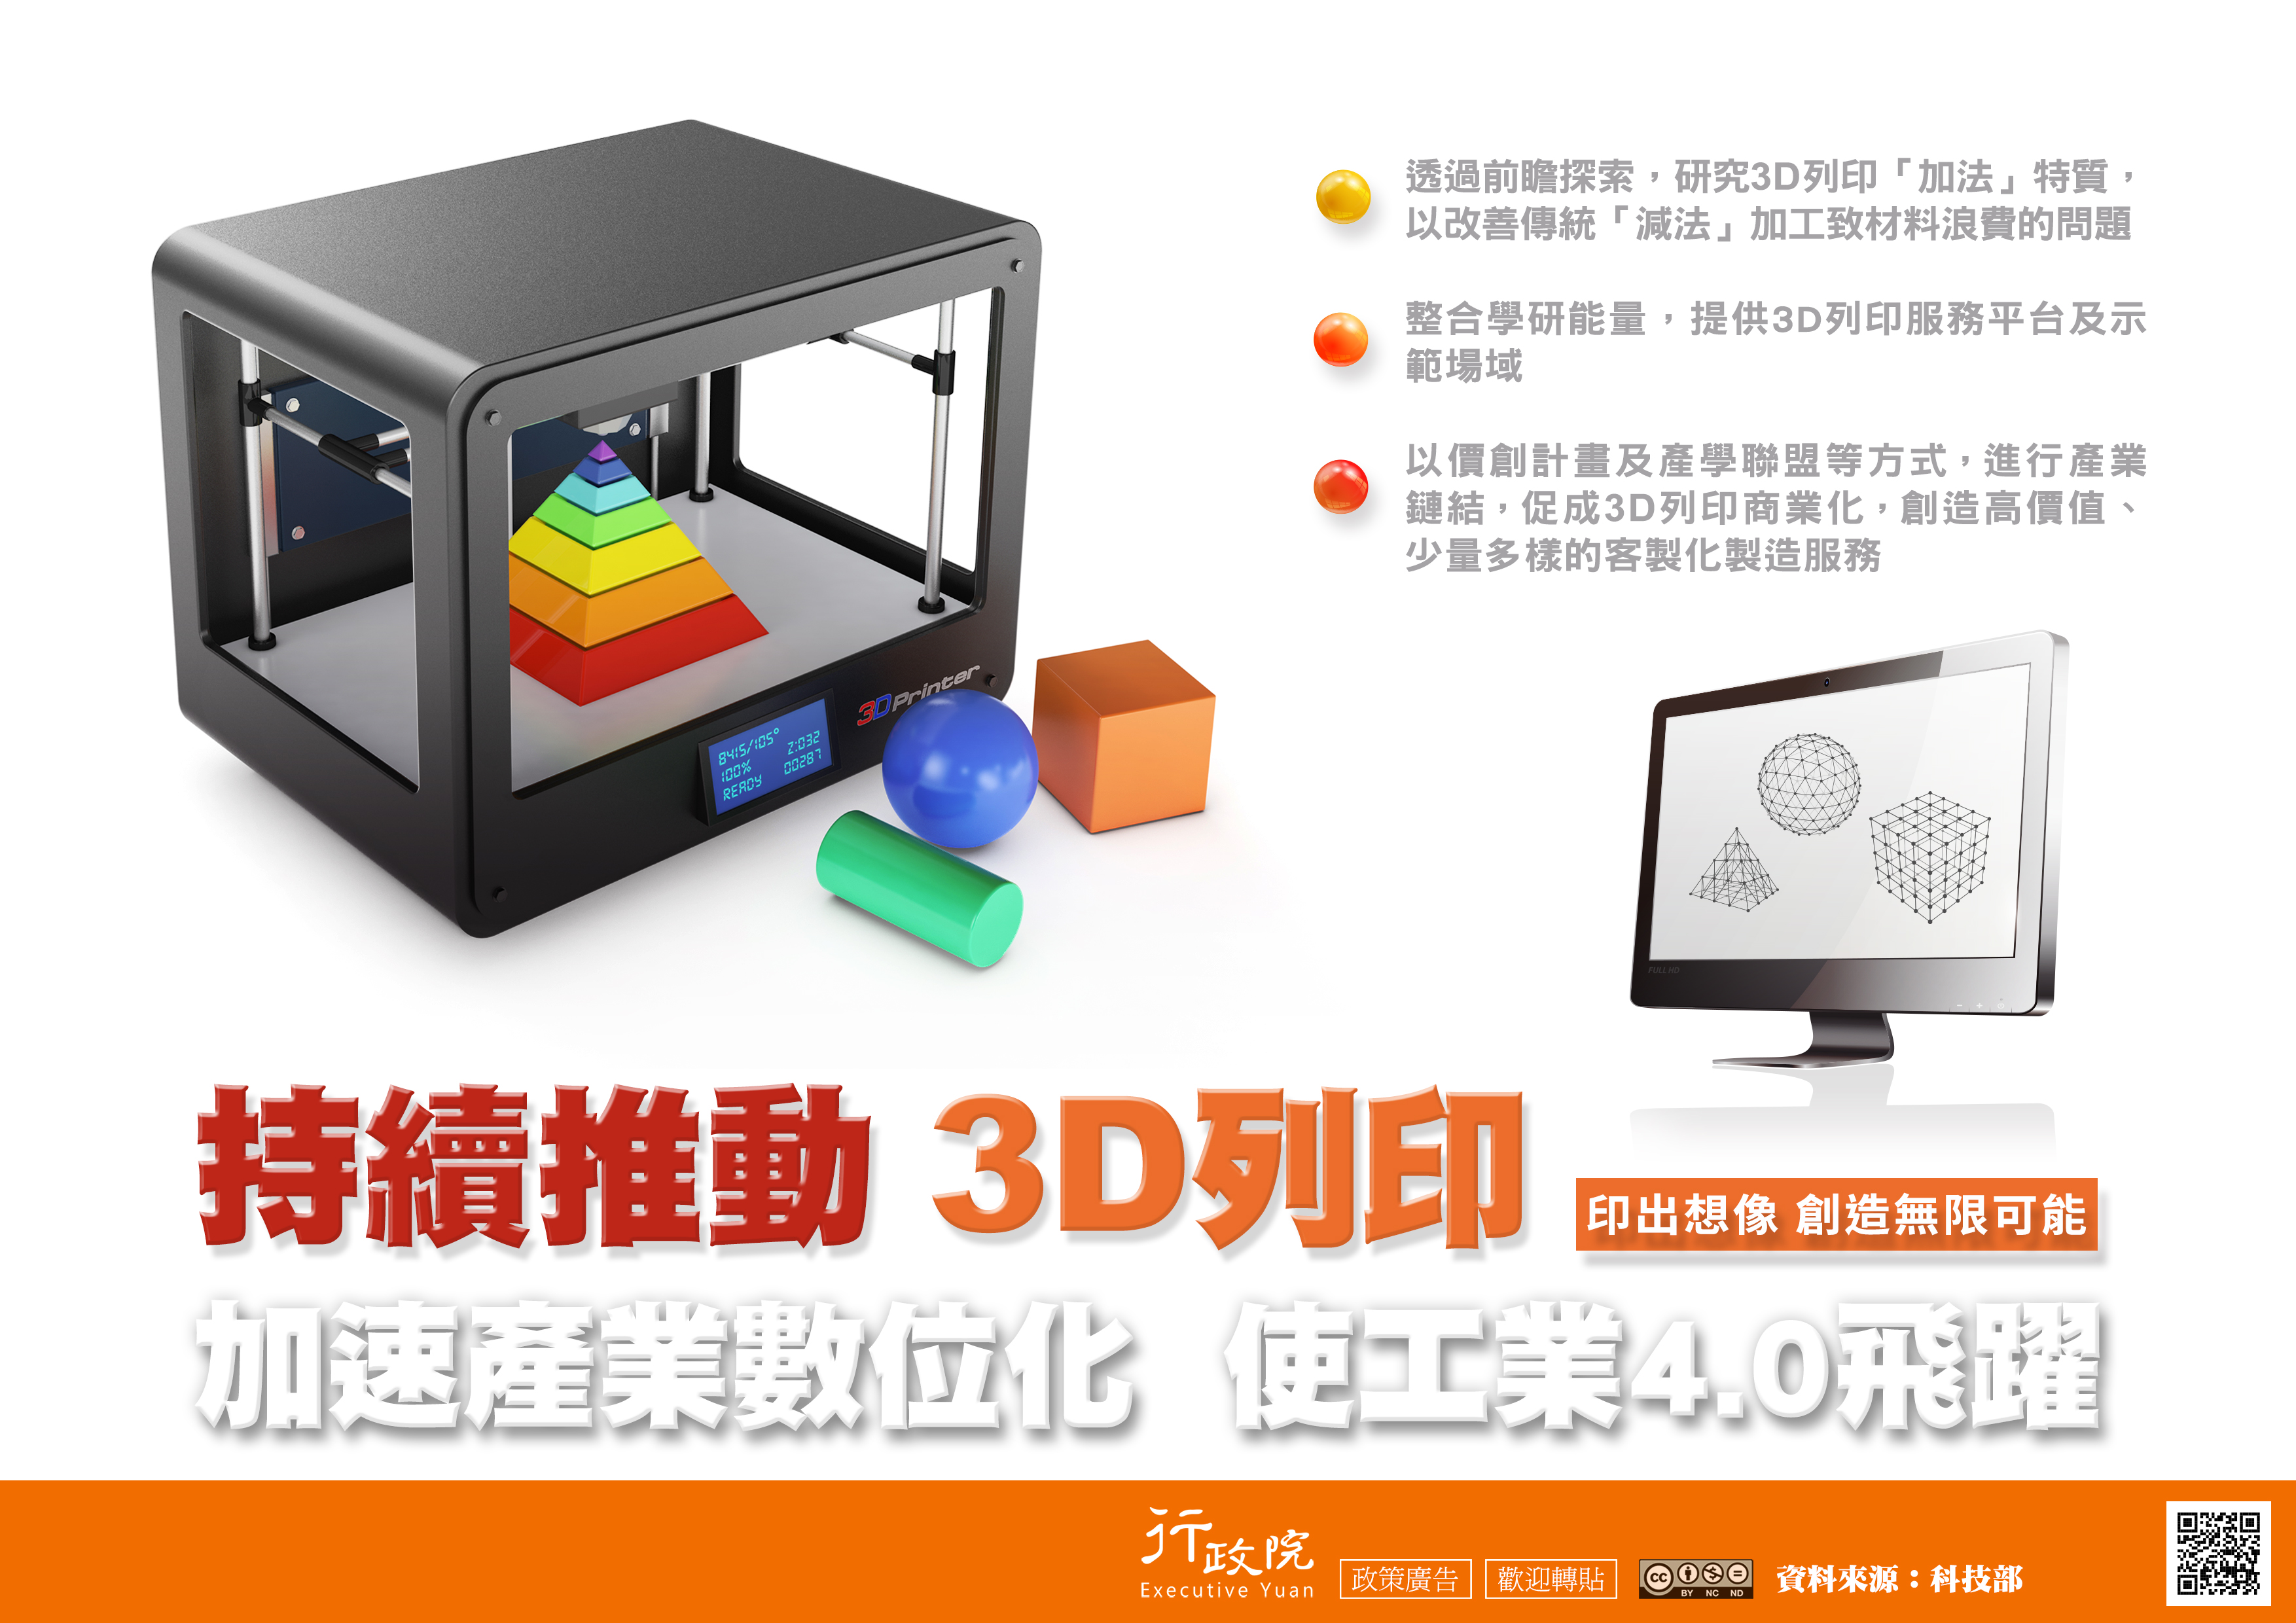 持續推動3D列印 加速產業數位化 使工業4.0飛躍.jpg